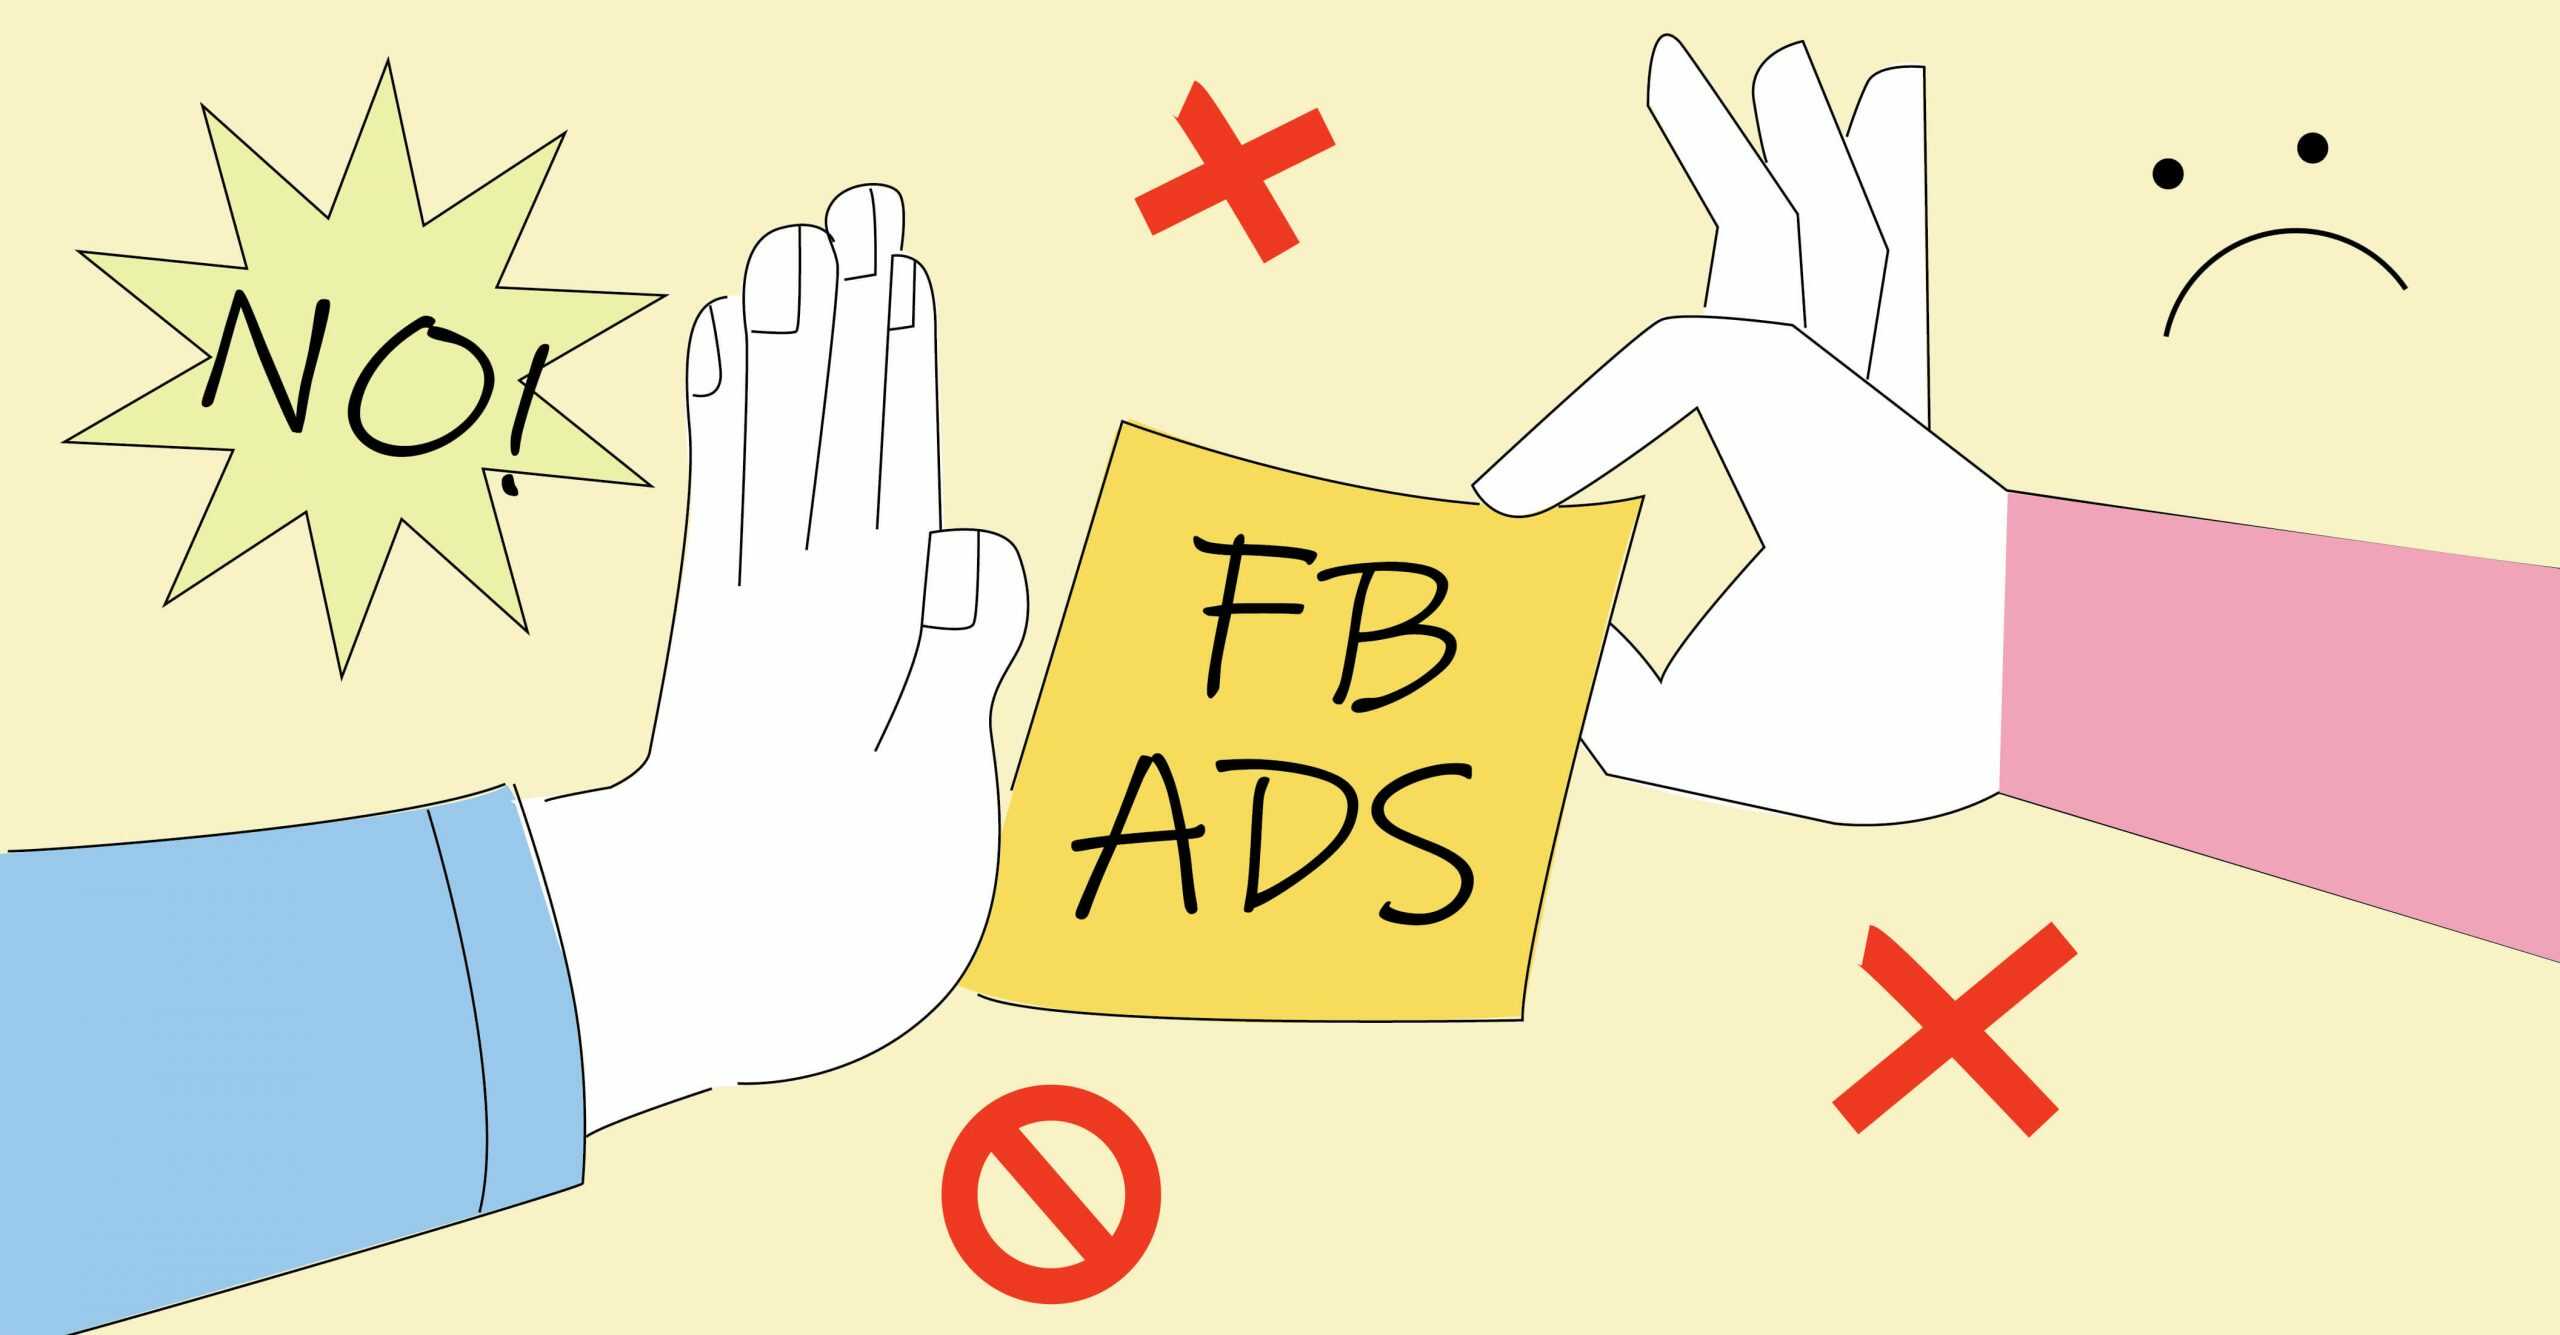 Facebook xét duyệt chính sách quảng cáo dựa vào các yếu tố nào?